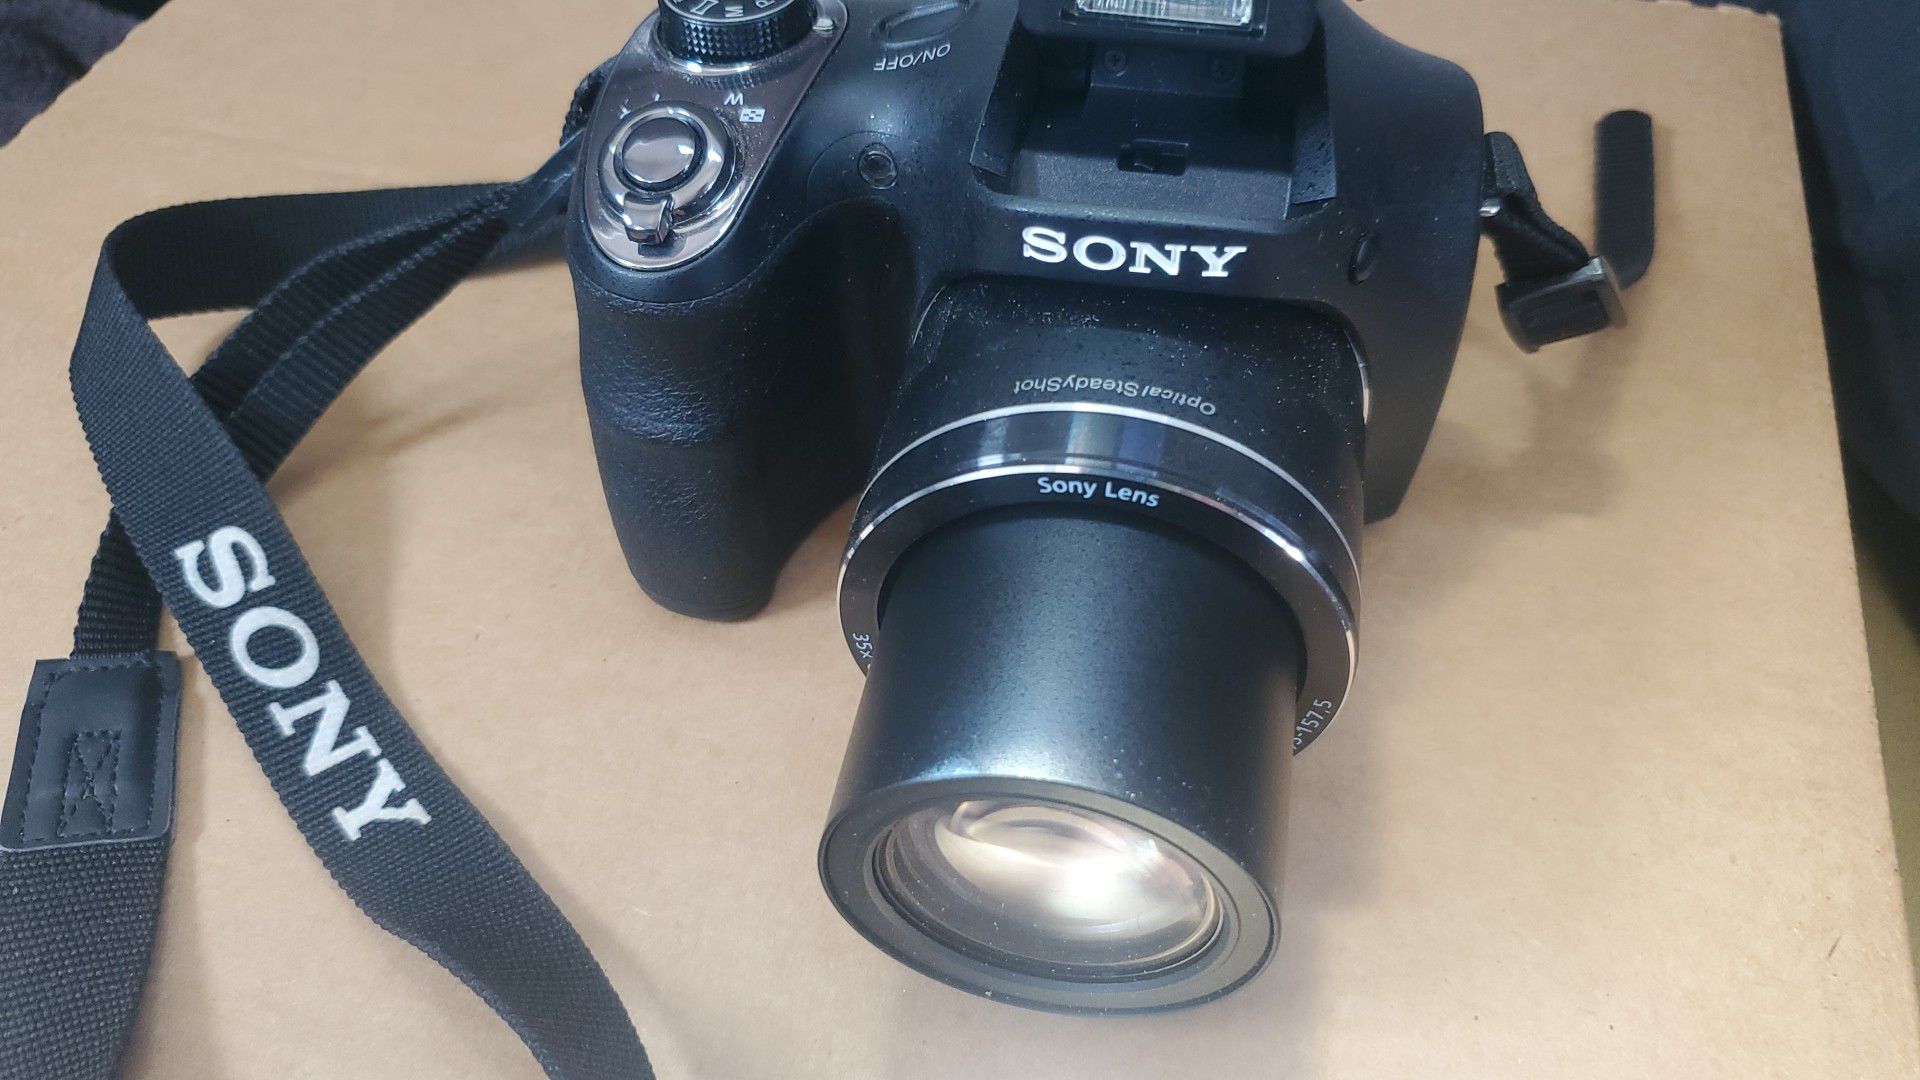 Sony Cybershot DSC-H300 20.1 megapixel camera